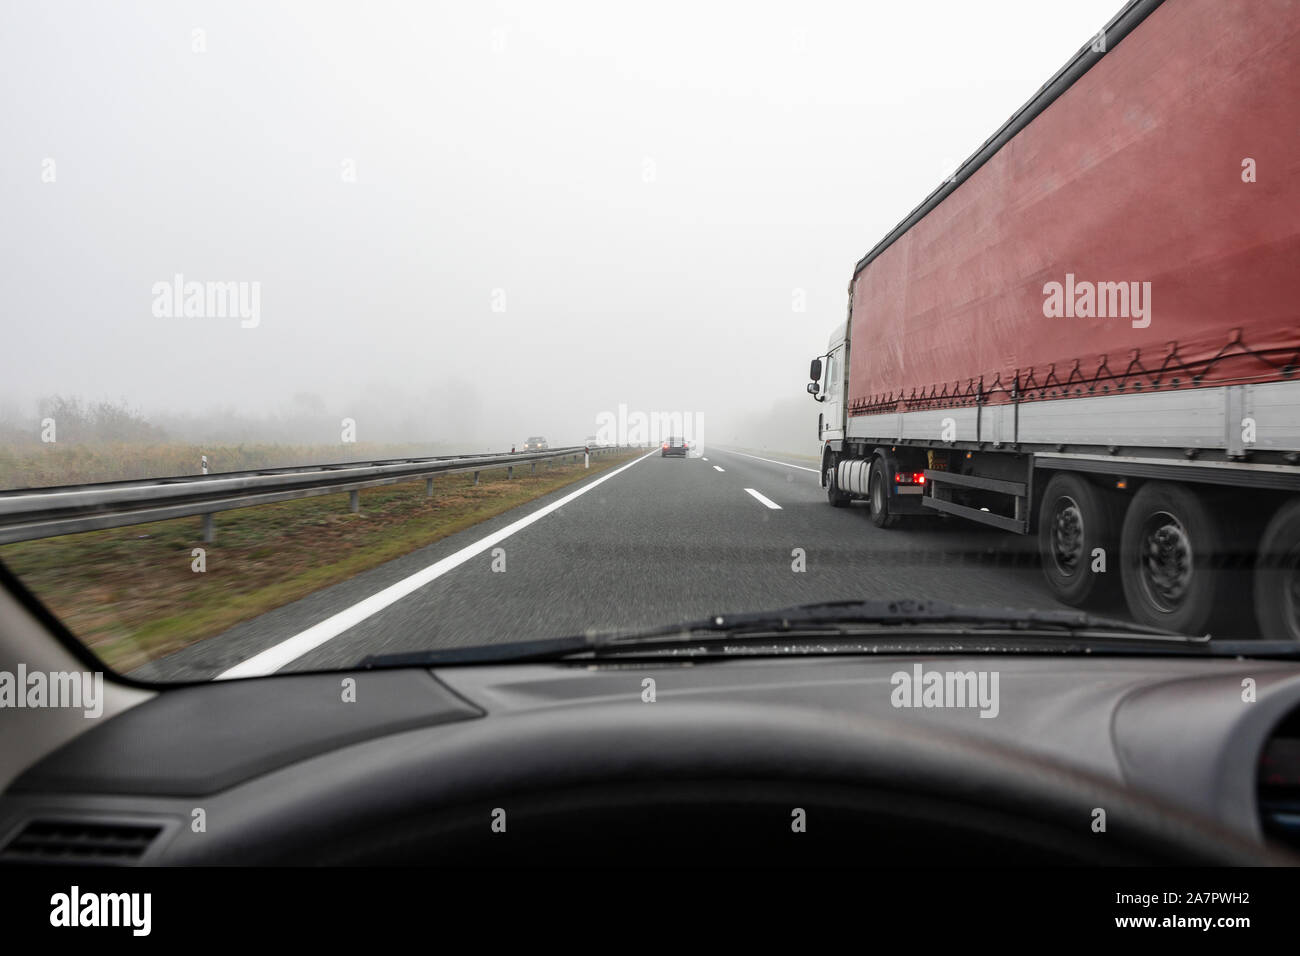 Dépassements camion sur l'autoroute de mauvaise visbility Banque D'Images